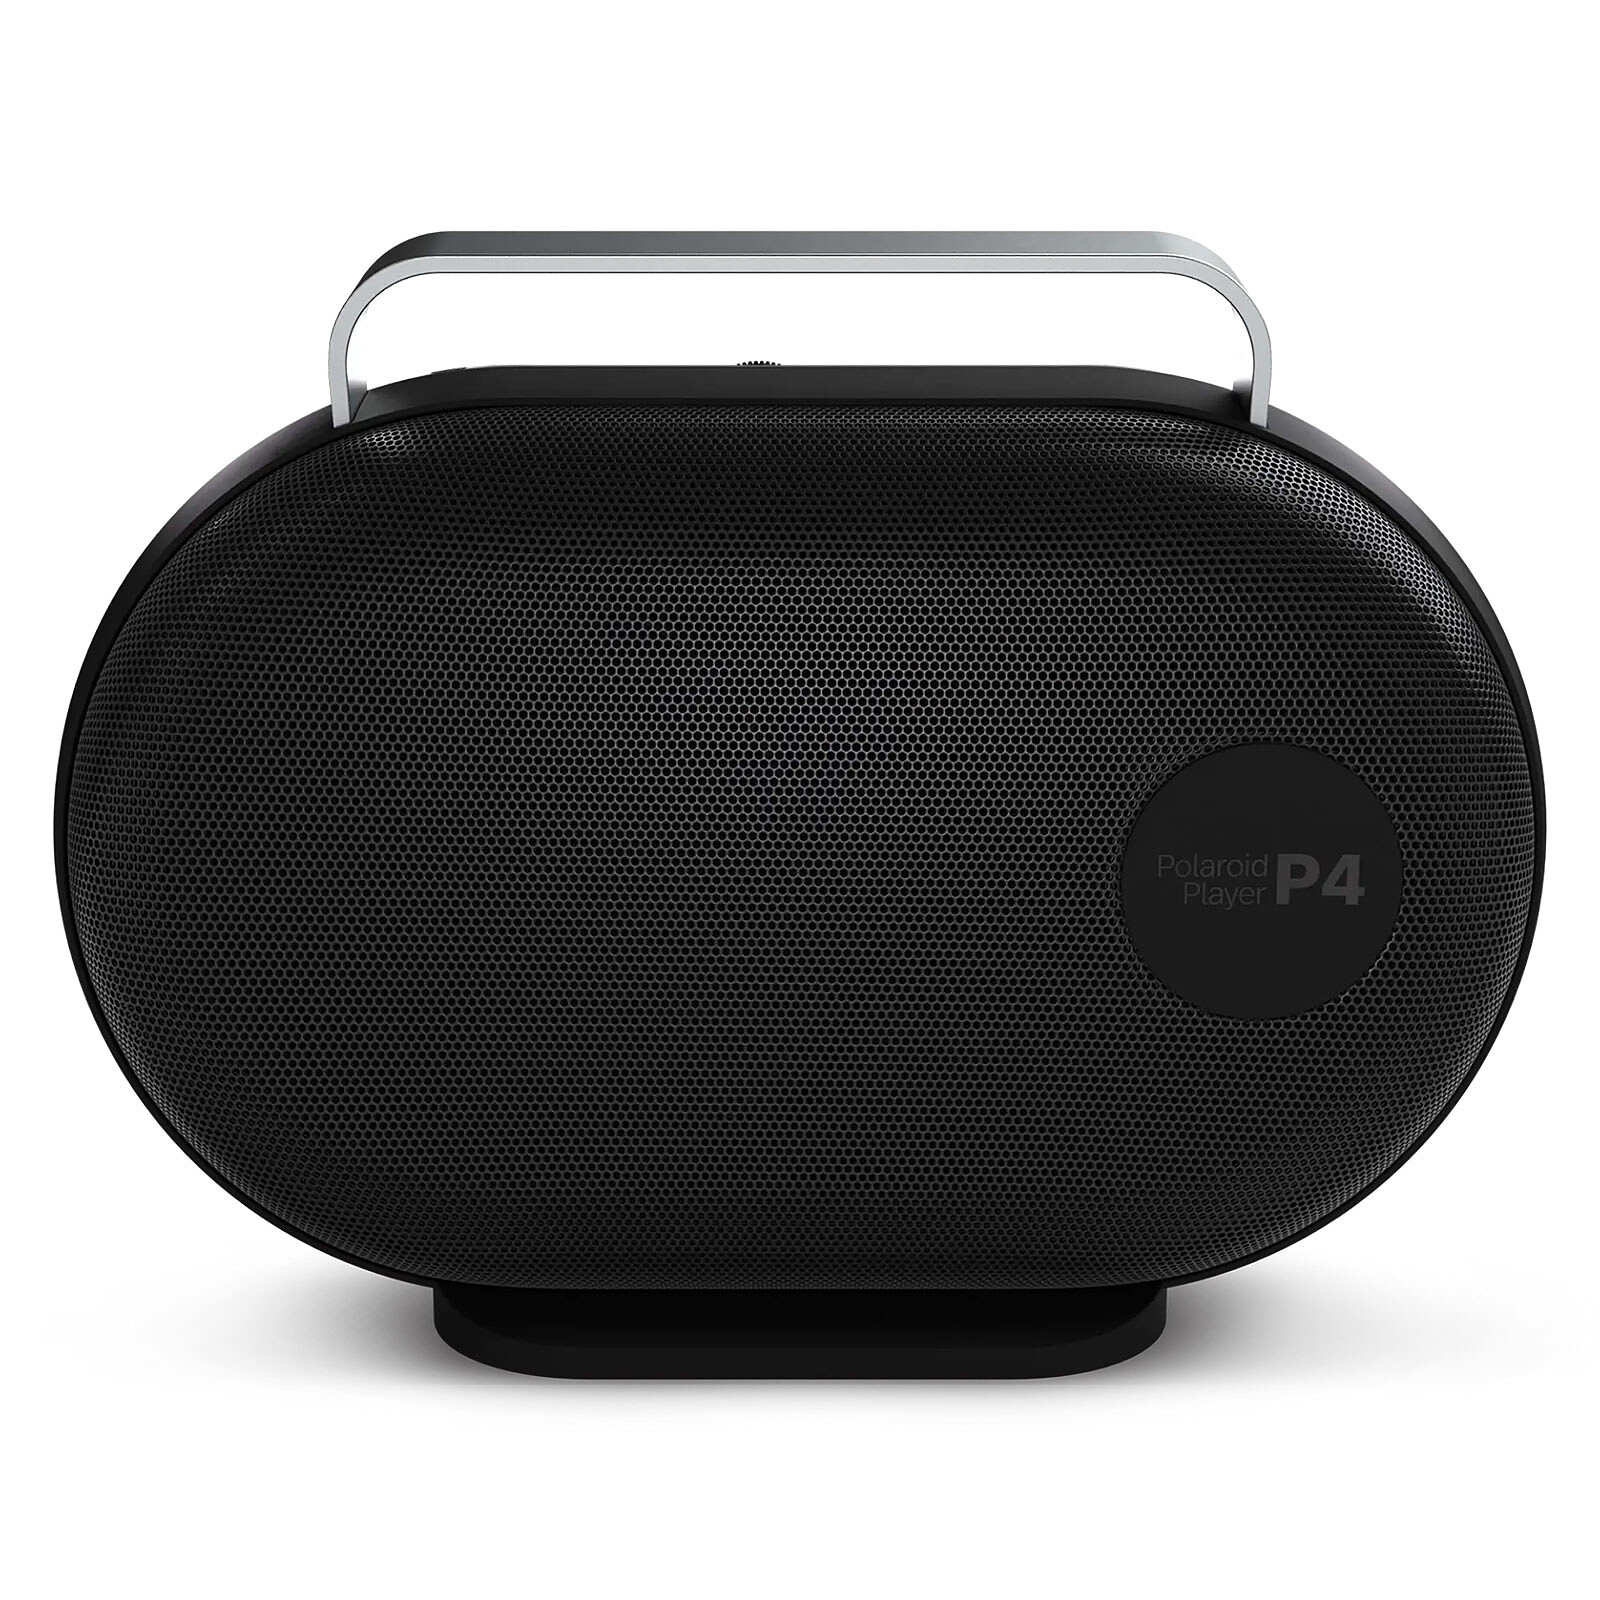 POLAROID P4 Music Player Black/White Bluetooth speaker Polaroid on LDLC